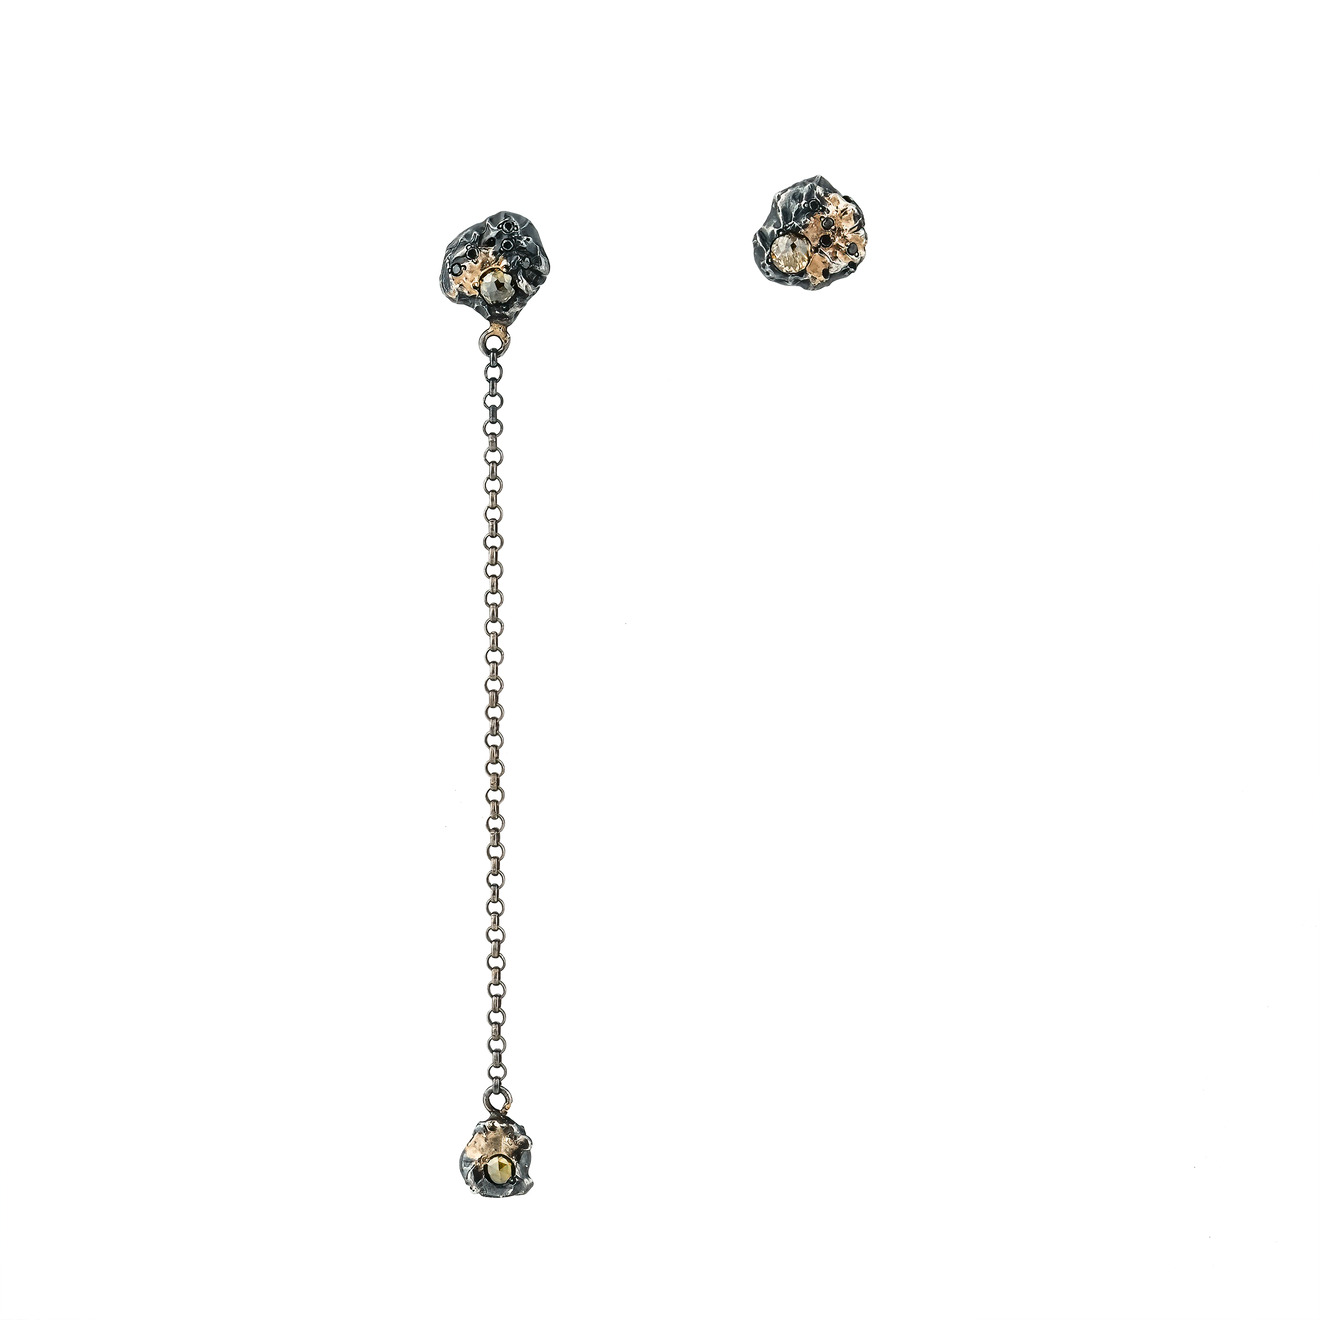 Kintsugi Jewelry Асимметричные серьги Rough diamond из серебра с позолотой и вставками из бриллиантов liya серьги с позолотой и вставками из жадеита и морской раковины